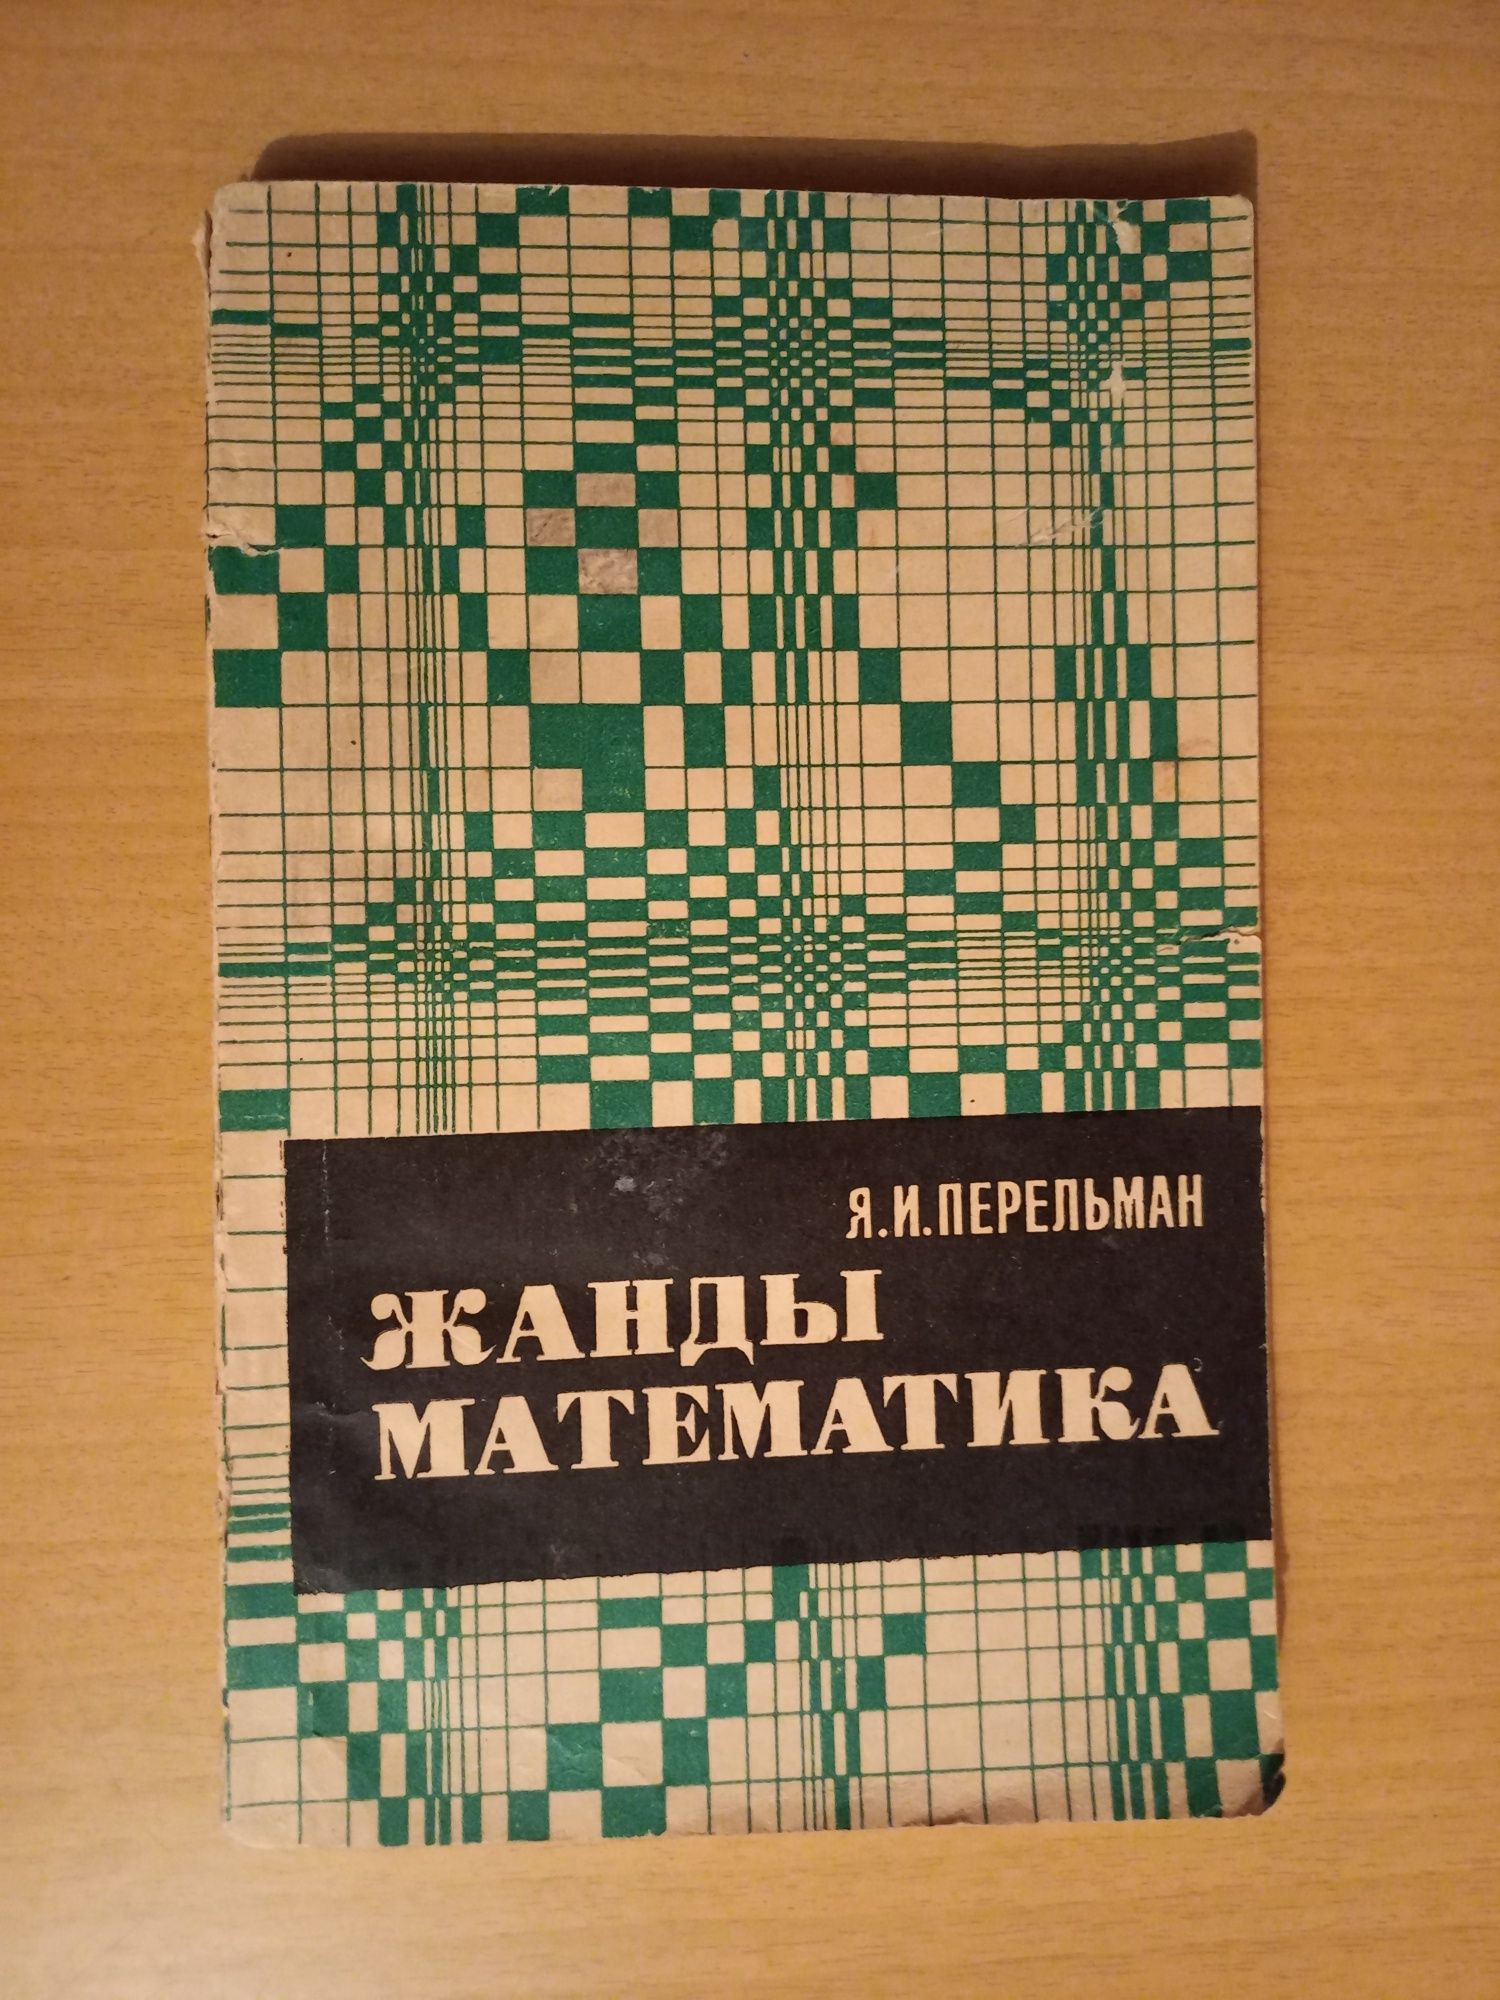 Яков Перельман.Живая математика.Жанды математика.На казахском языке.